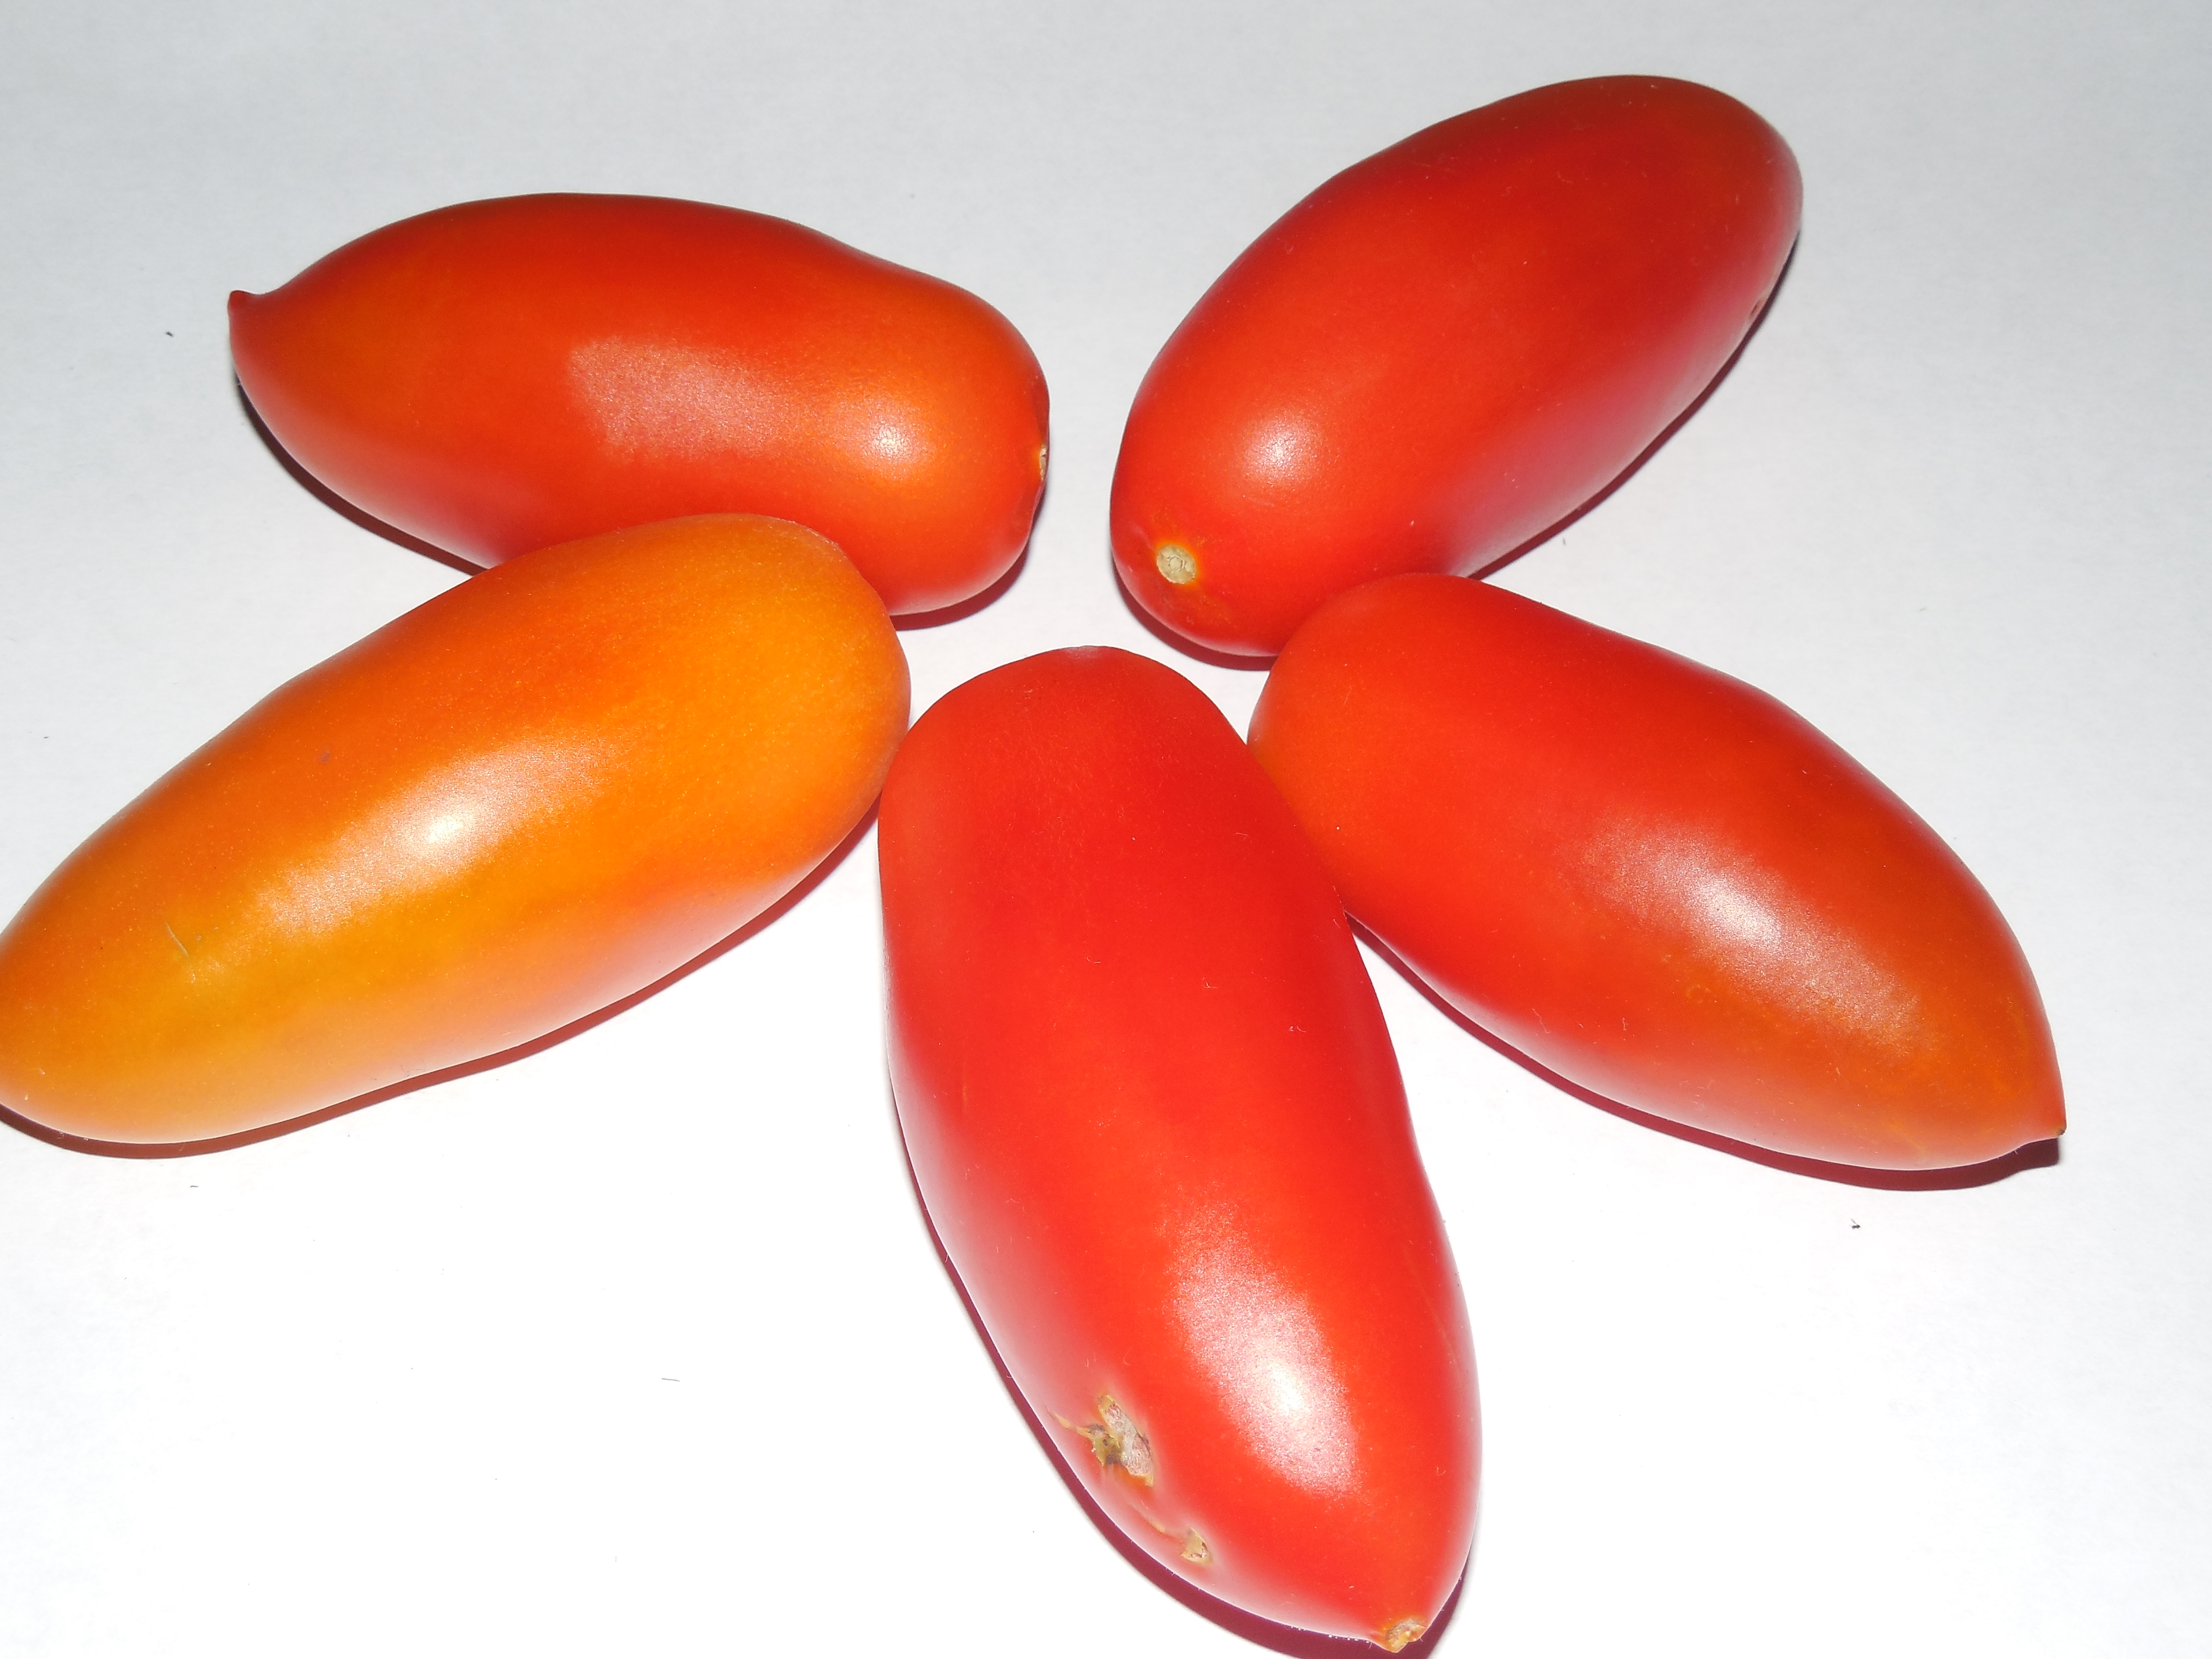 Описание томата сорта «ниагара»: урожайность, вкус, устойчивость к болезням